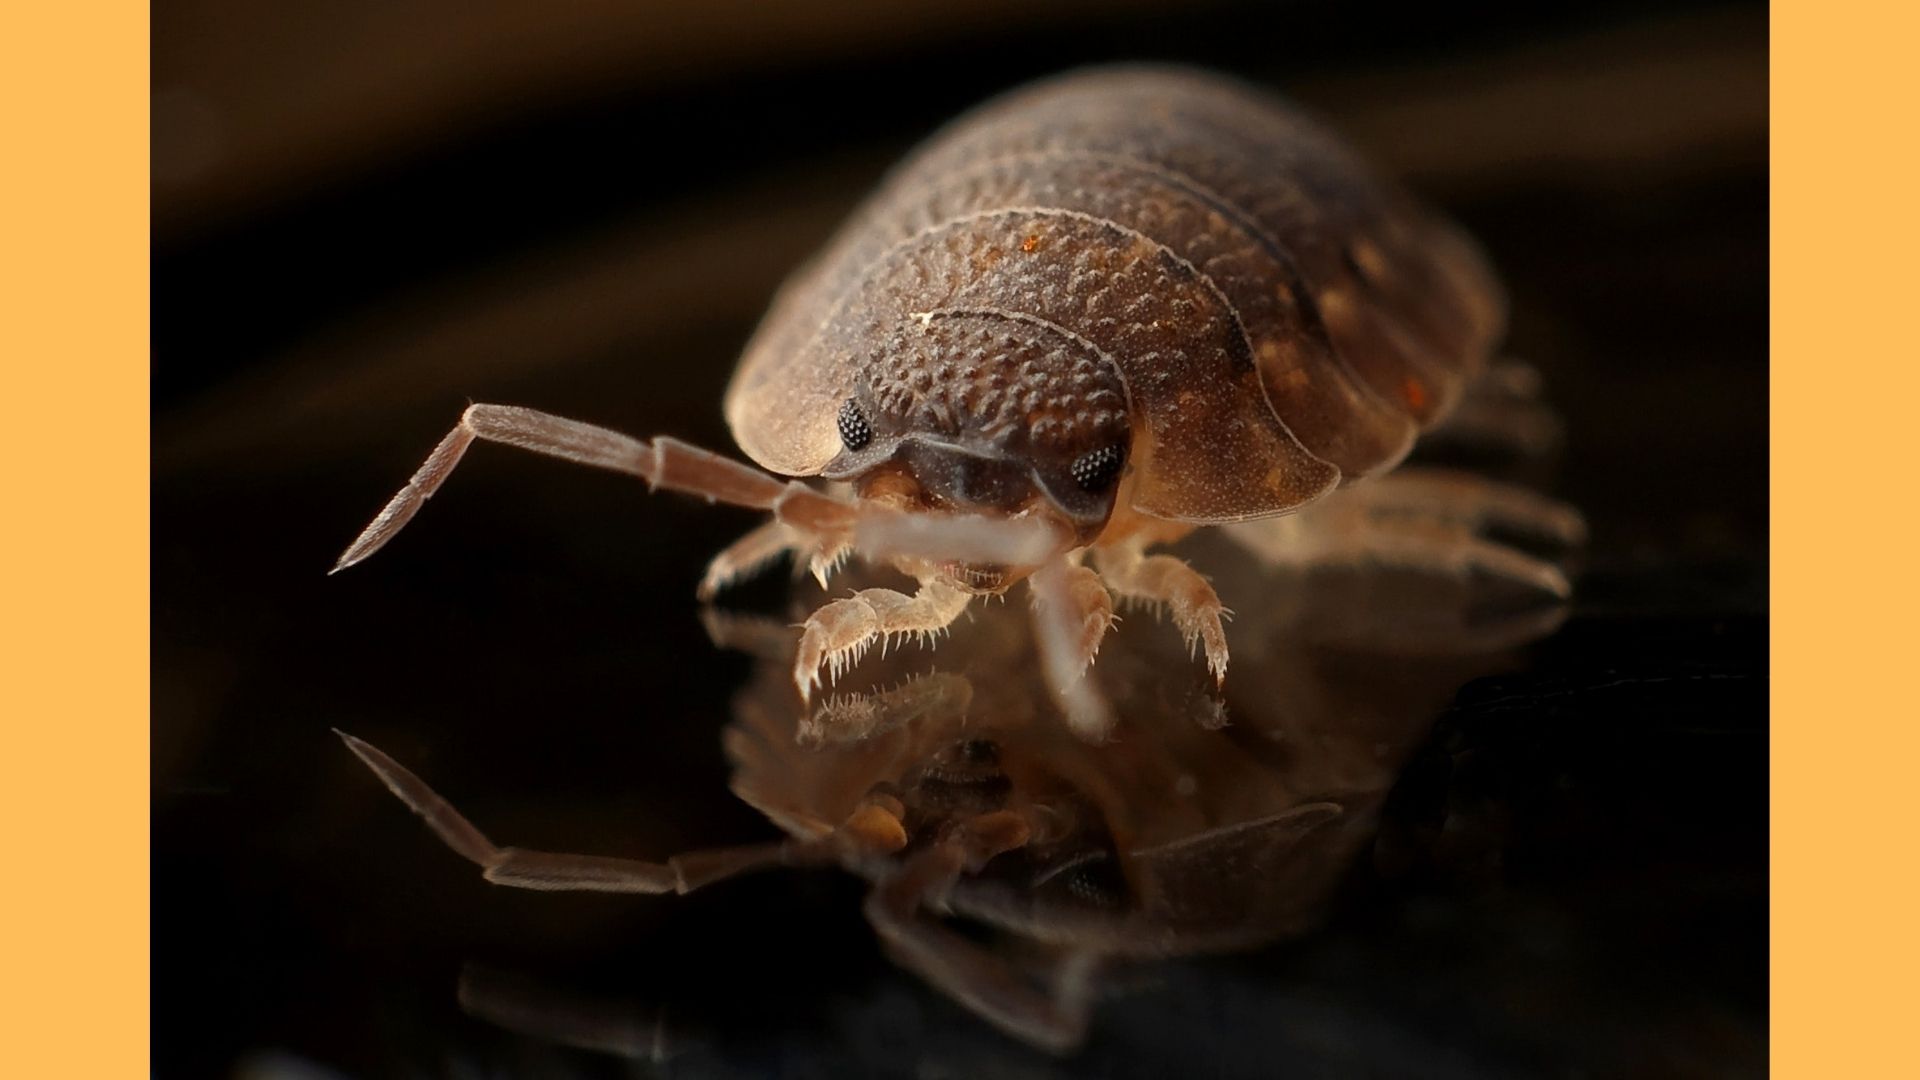 Le calvaire des punaises de lit : comment repérer et se débarrasser de  ces insectes nuisibles ?